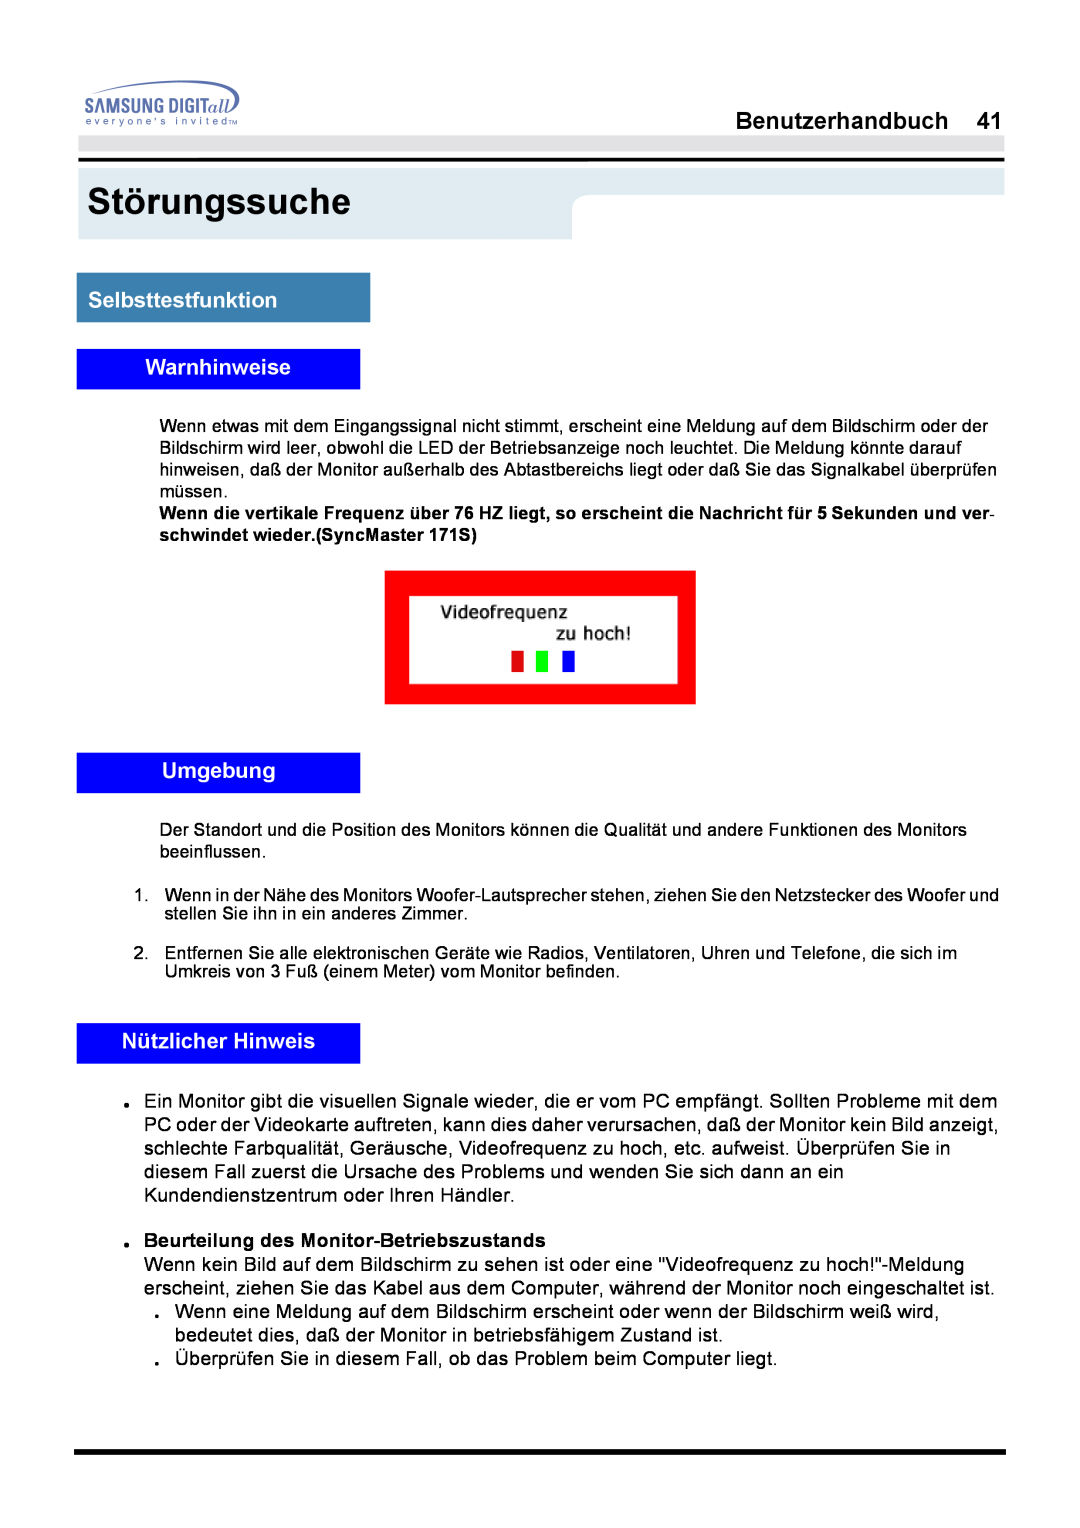 Samsung GH17LSAB/EDC manual Selbsttestfunktion Warnhinweise, Umgebung, Nützlicher Hinweis, Störungssuche, Benutzerhandbuch 